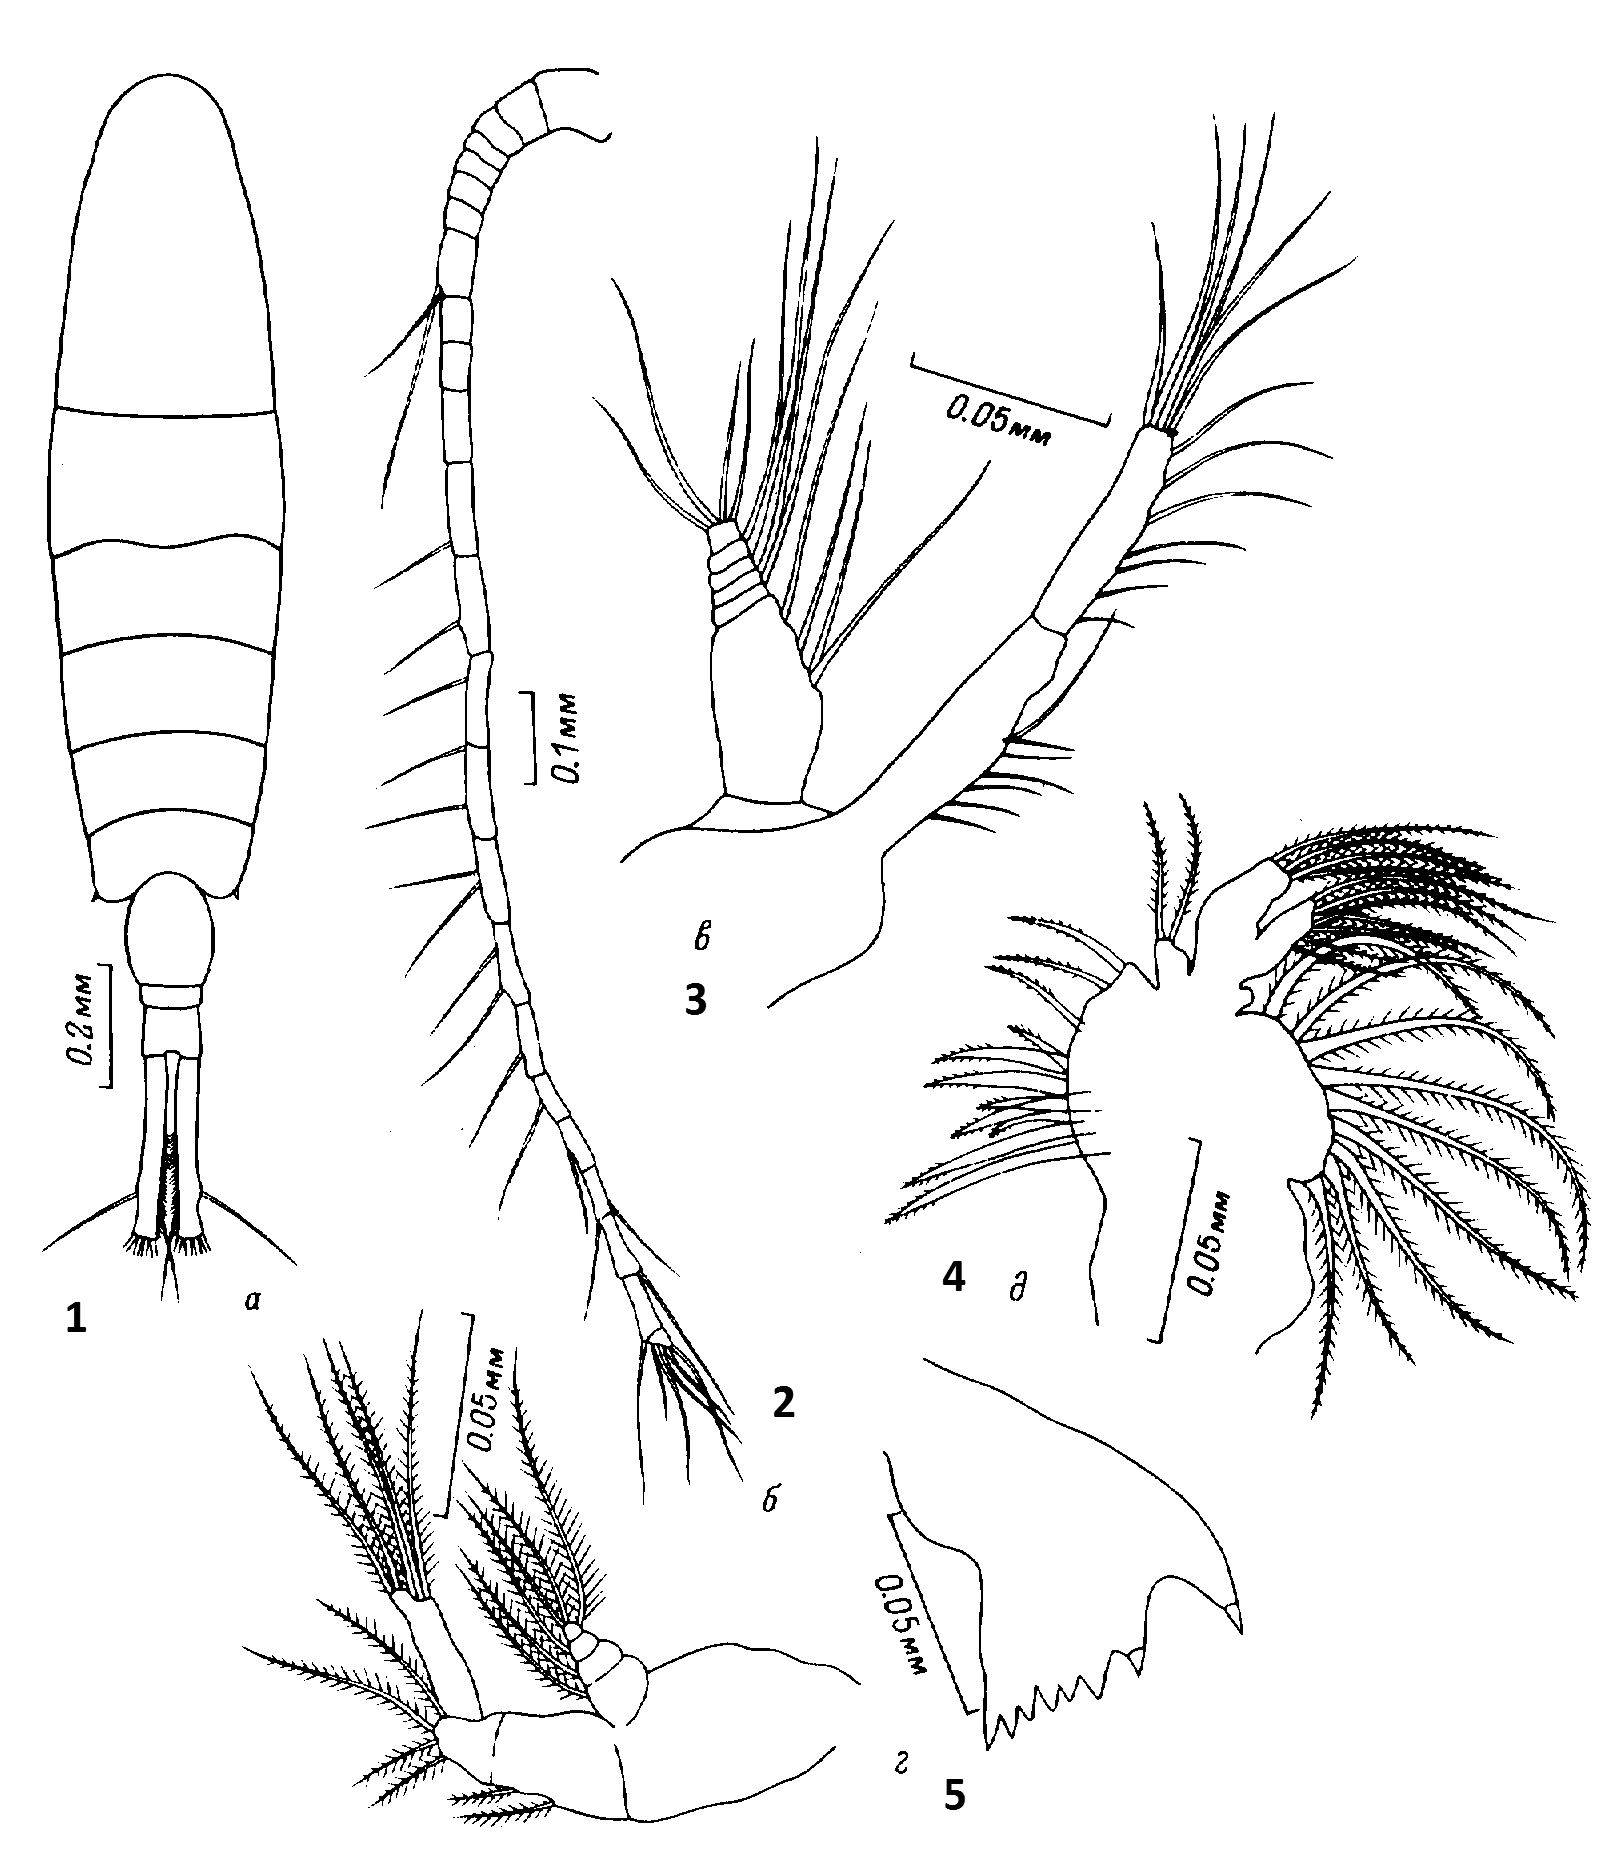 Espce Sinocalanus tenellus - Planche 3 de figures morphologiques